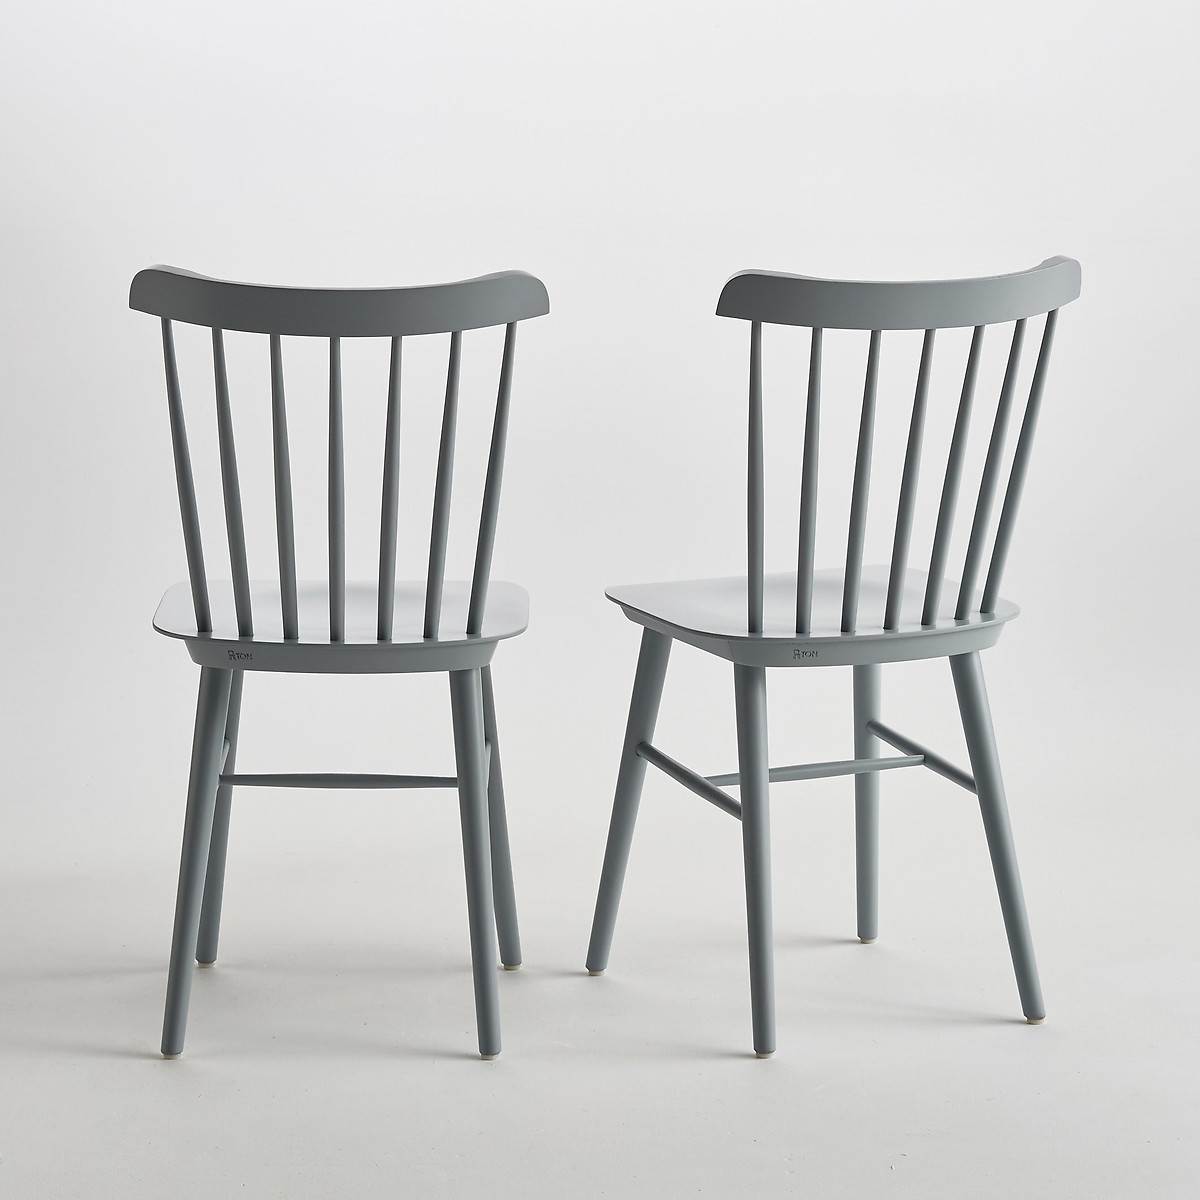 Комплект из 2 стульев Ivy La Redoute La Redoute комплект из 2 серый, размер комплект из 2 - фото 2